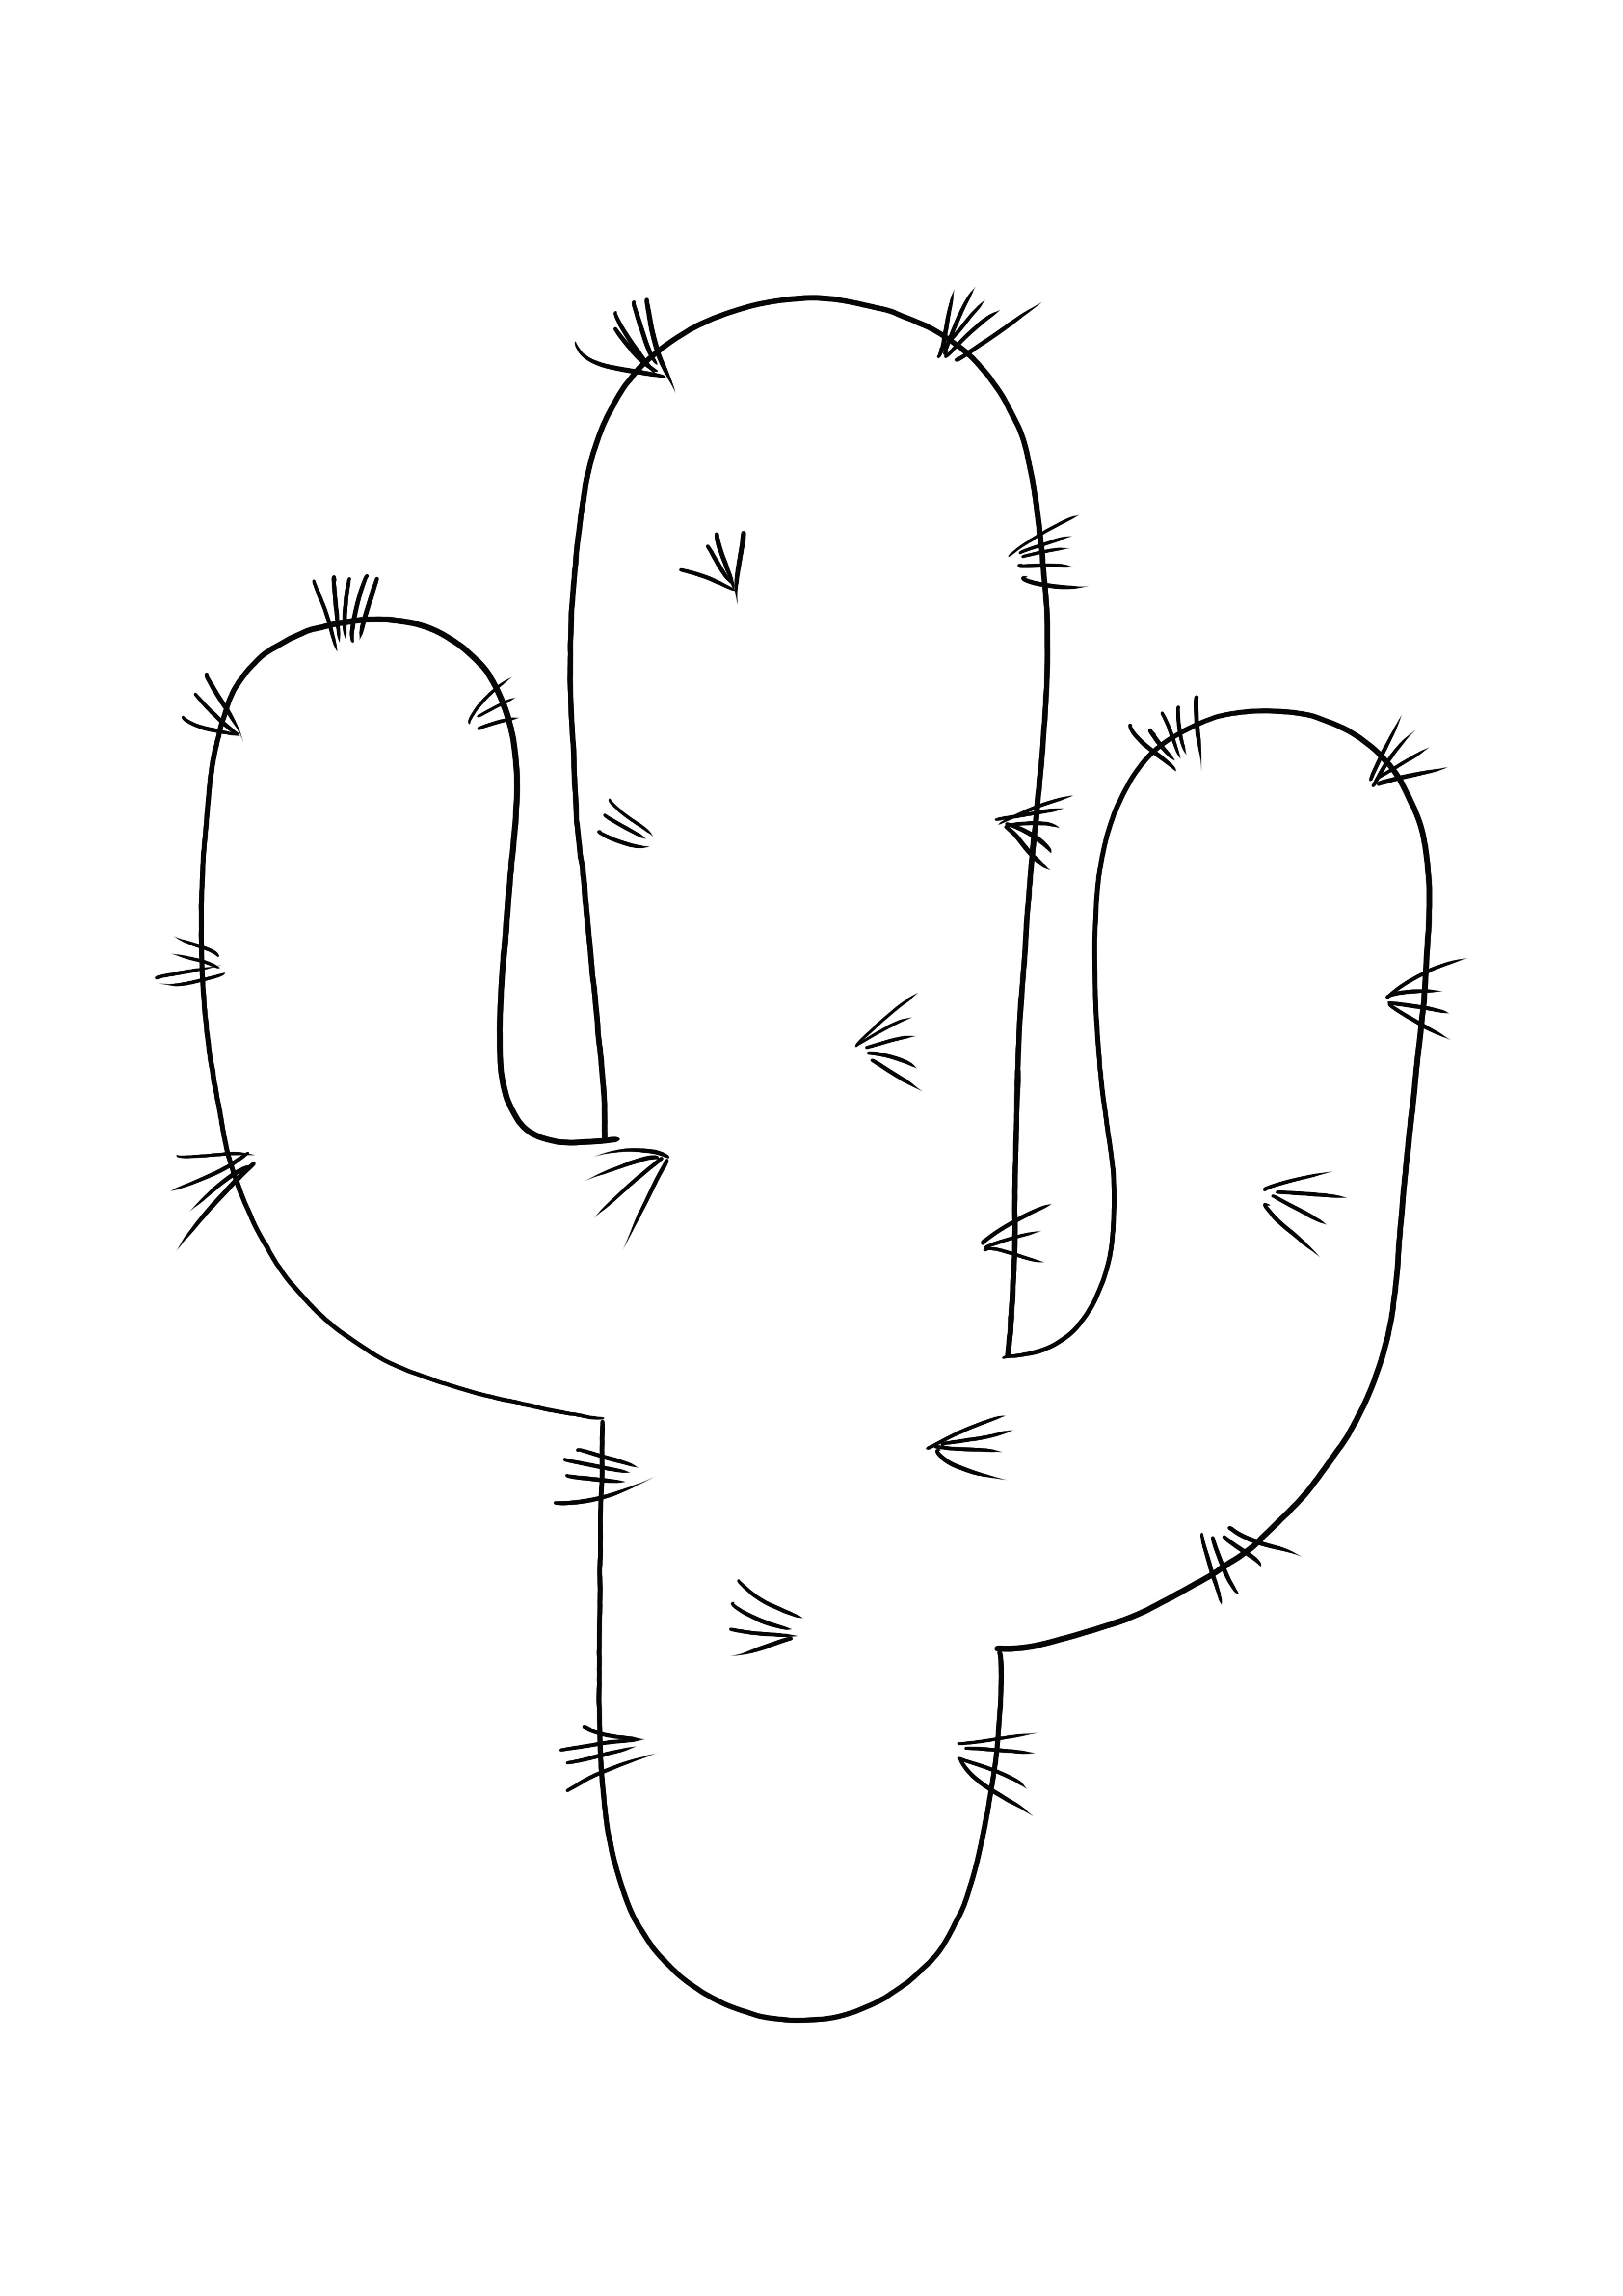 Cactus Emoji gratis para imprimir o descargar para colorear fácilmente para niños